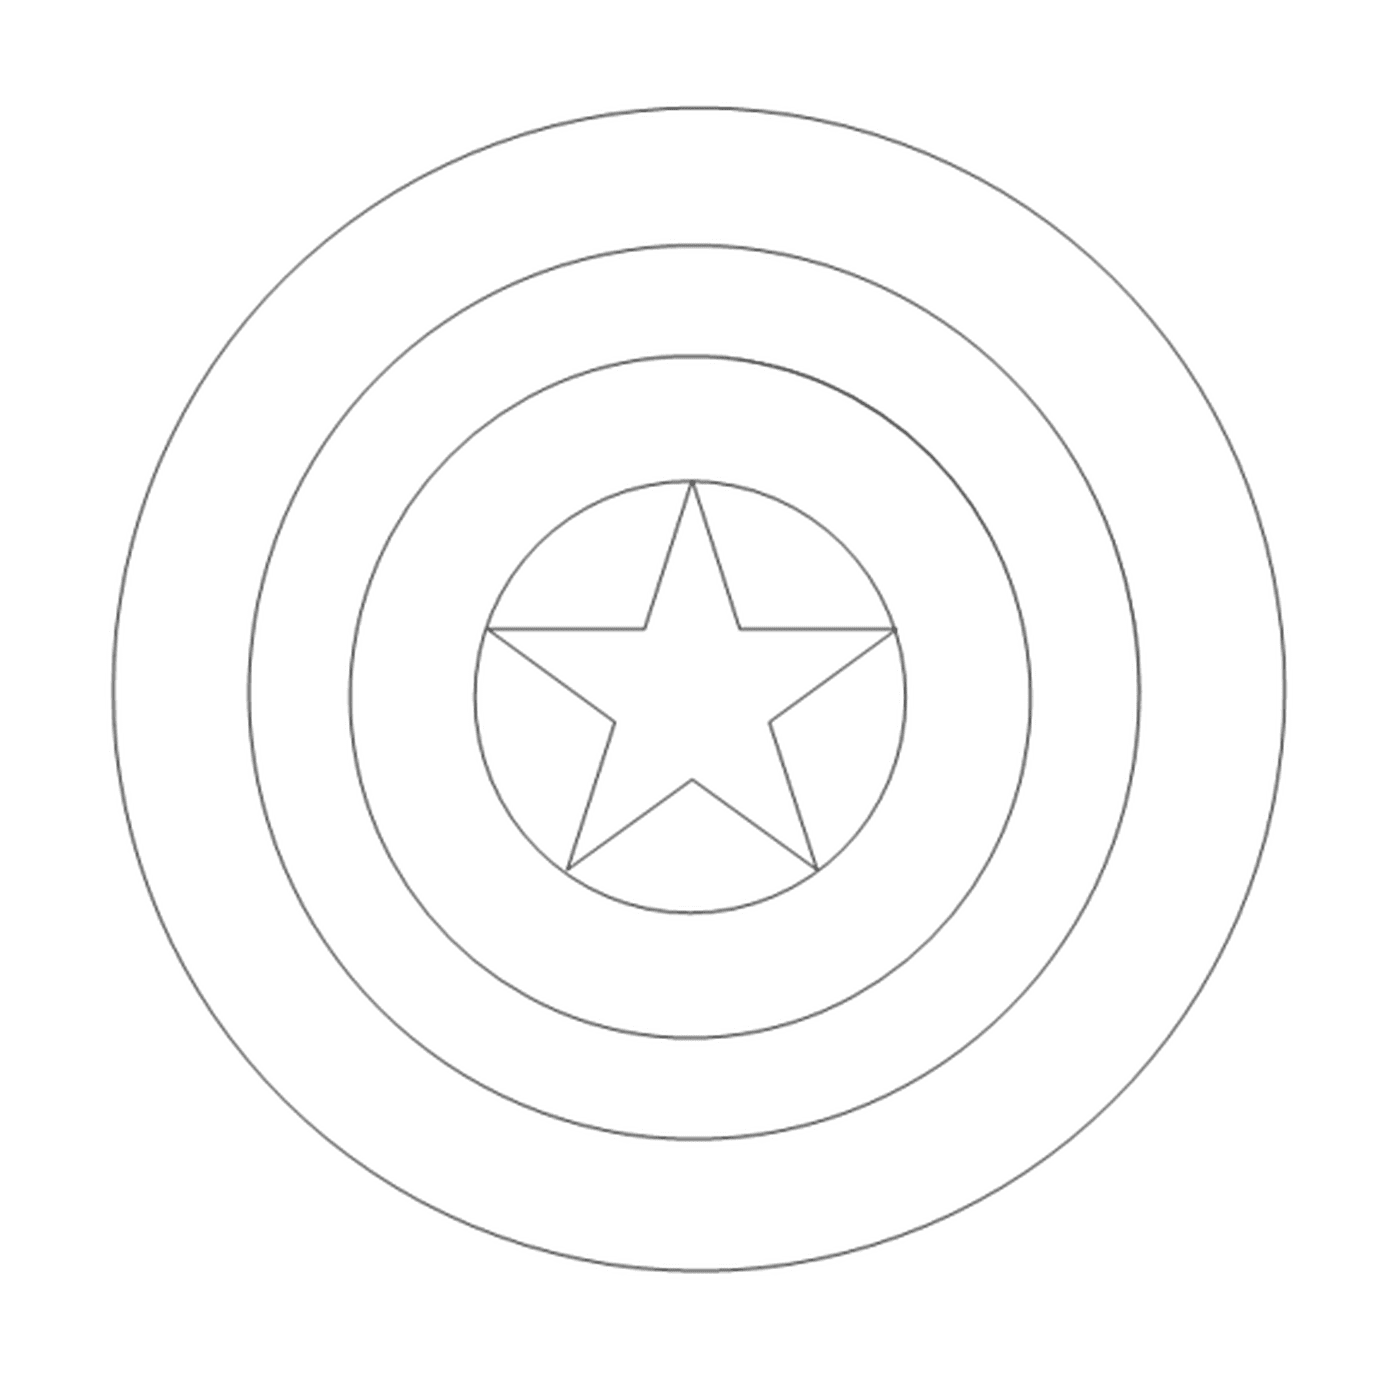  Una estrella en el centro de un círculo 